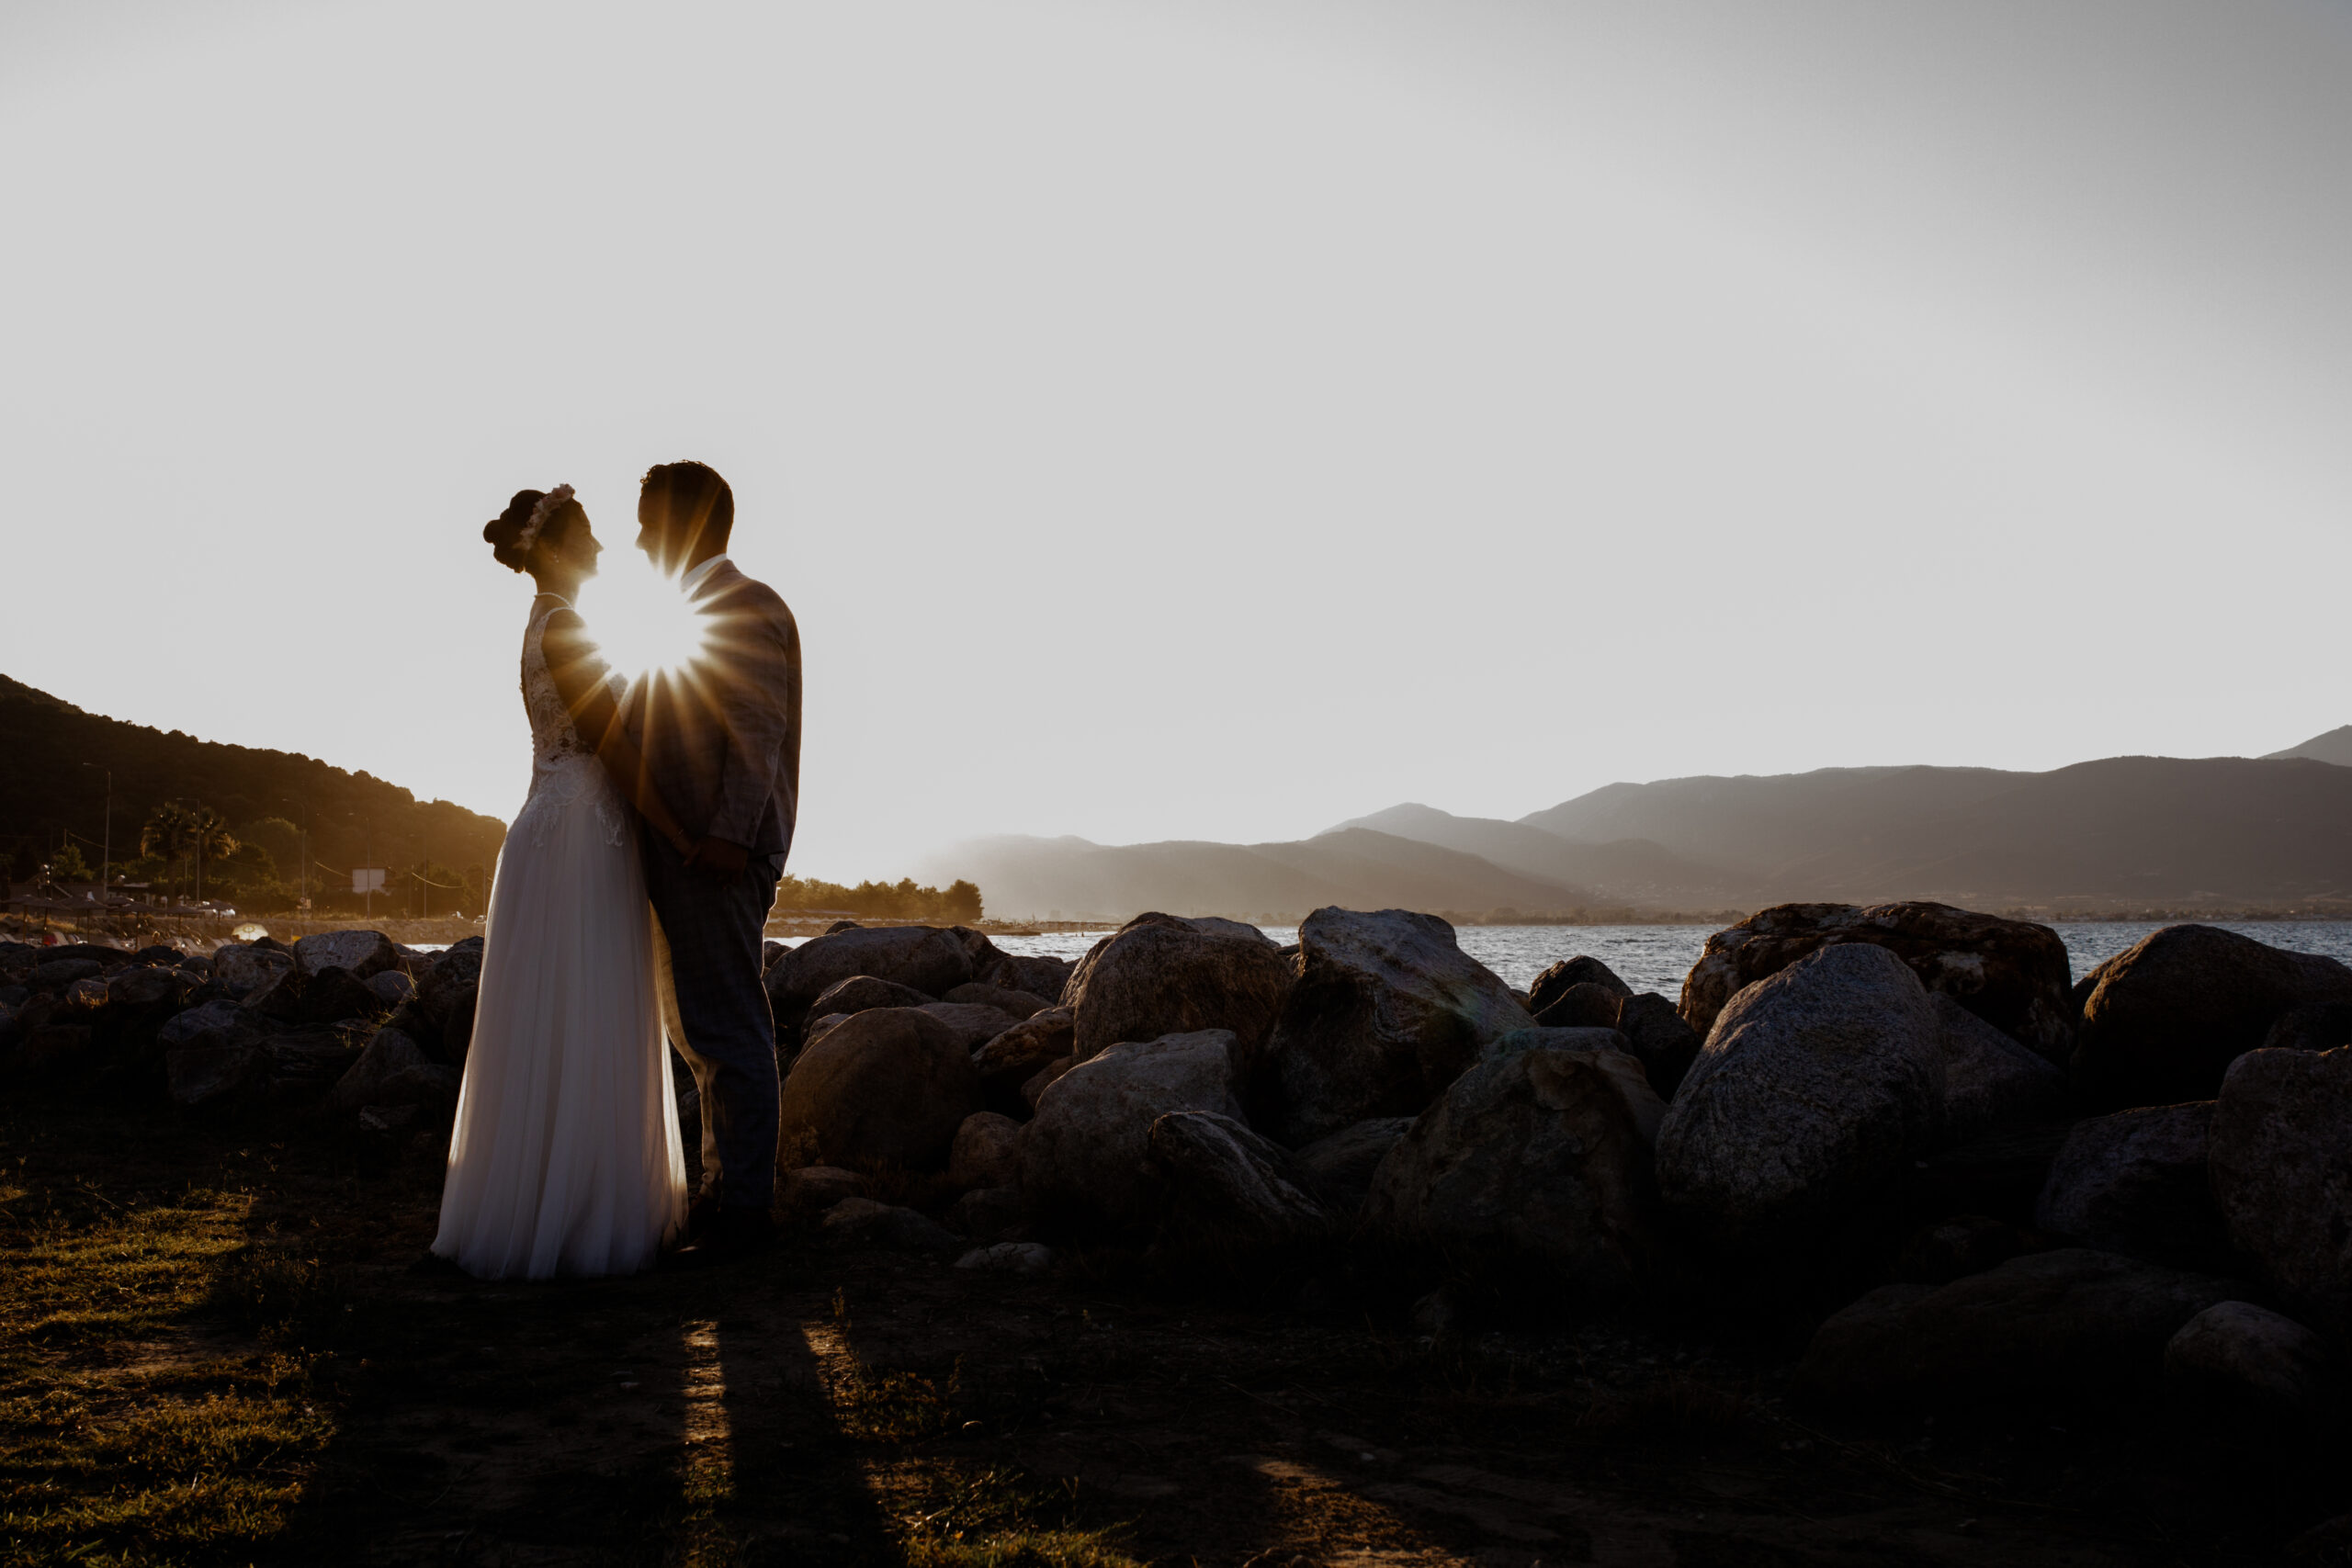 Das Brautpaar stand zum Sonnenuntergang romantisch zusammen am Meer. Die Destinationwedding fand in Griechenland statt - Fotografin: Sonja Yasmin Fotografie, Hochzeitsfotografin in Köln, Bonn und ganz NRW, Fotografin für Portraitfotos